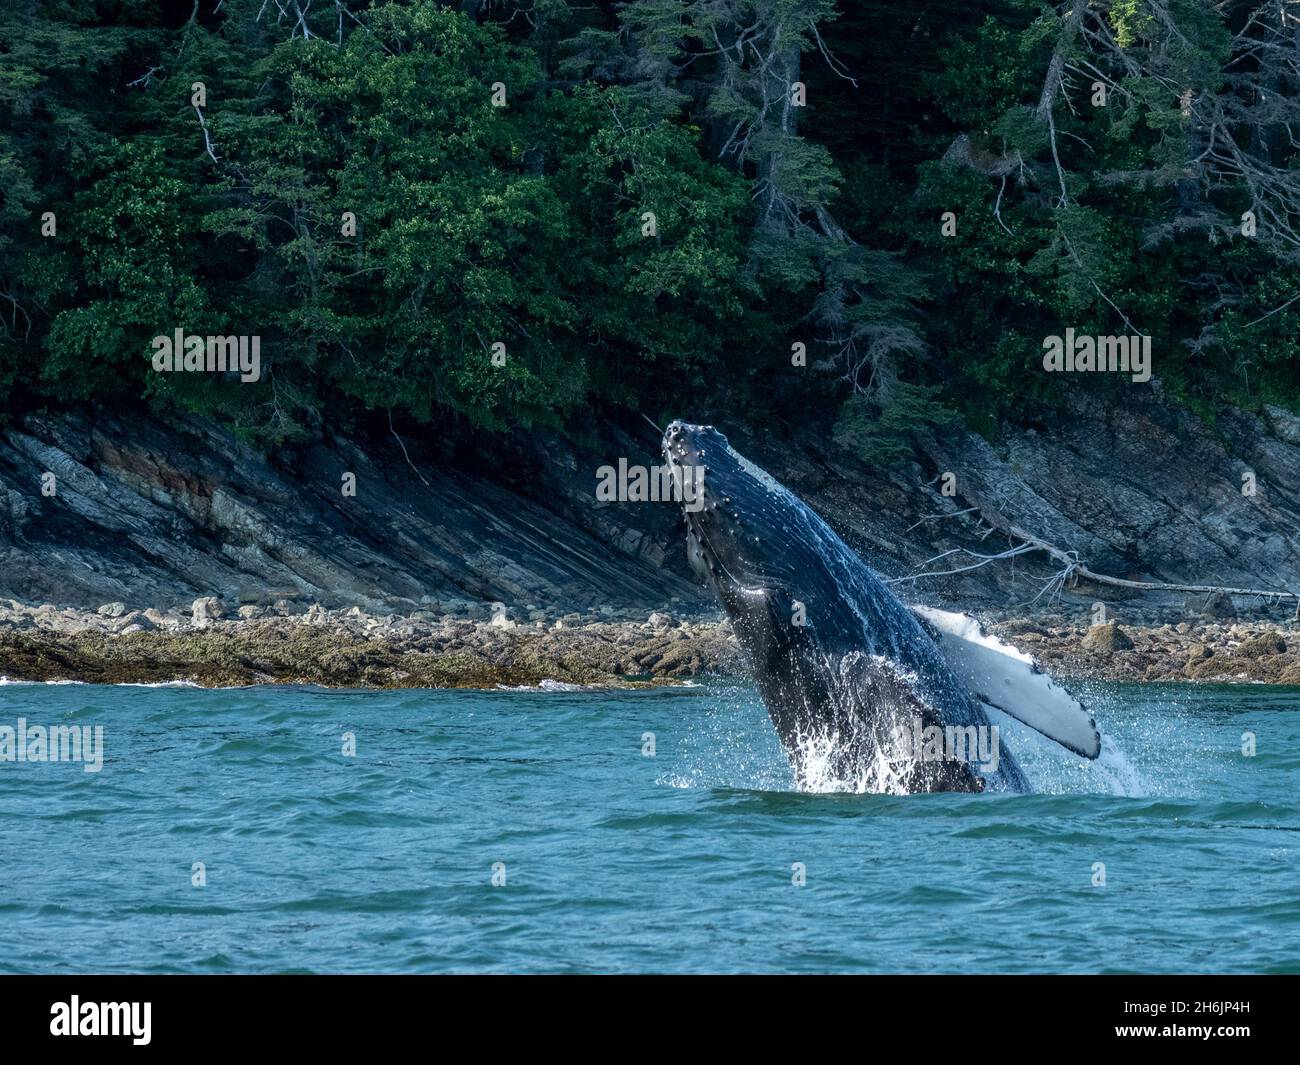 Jeune baleine à bosse (Megaptera novaeangliae, braconnage près de l'île Lincoln, sud-est de l'Alaska, États-Unis d'Amérique, Amérique du Nord Banque D'Images